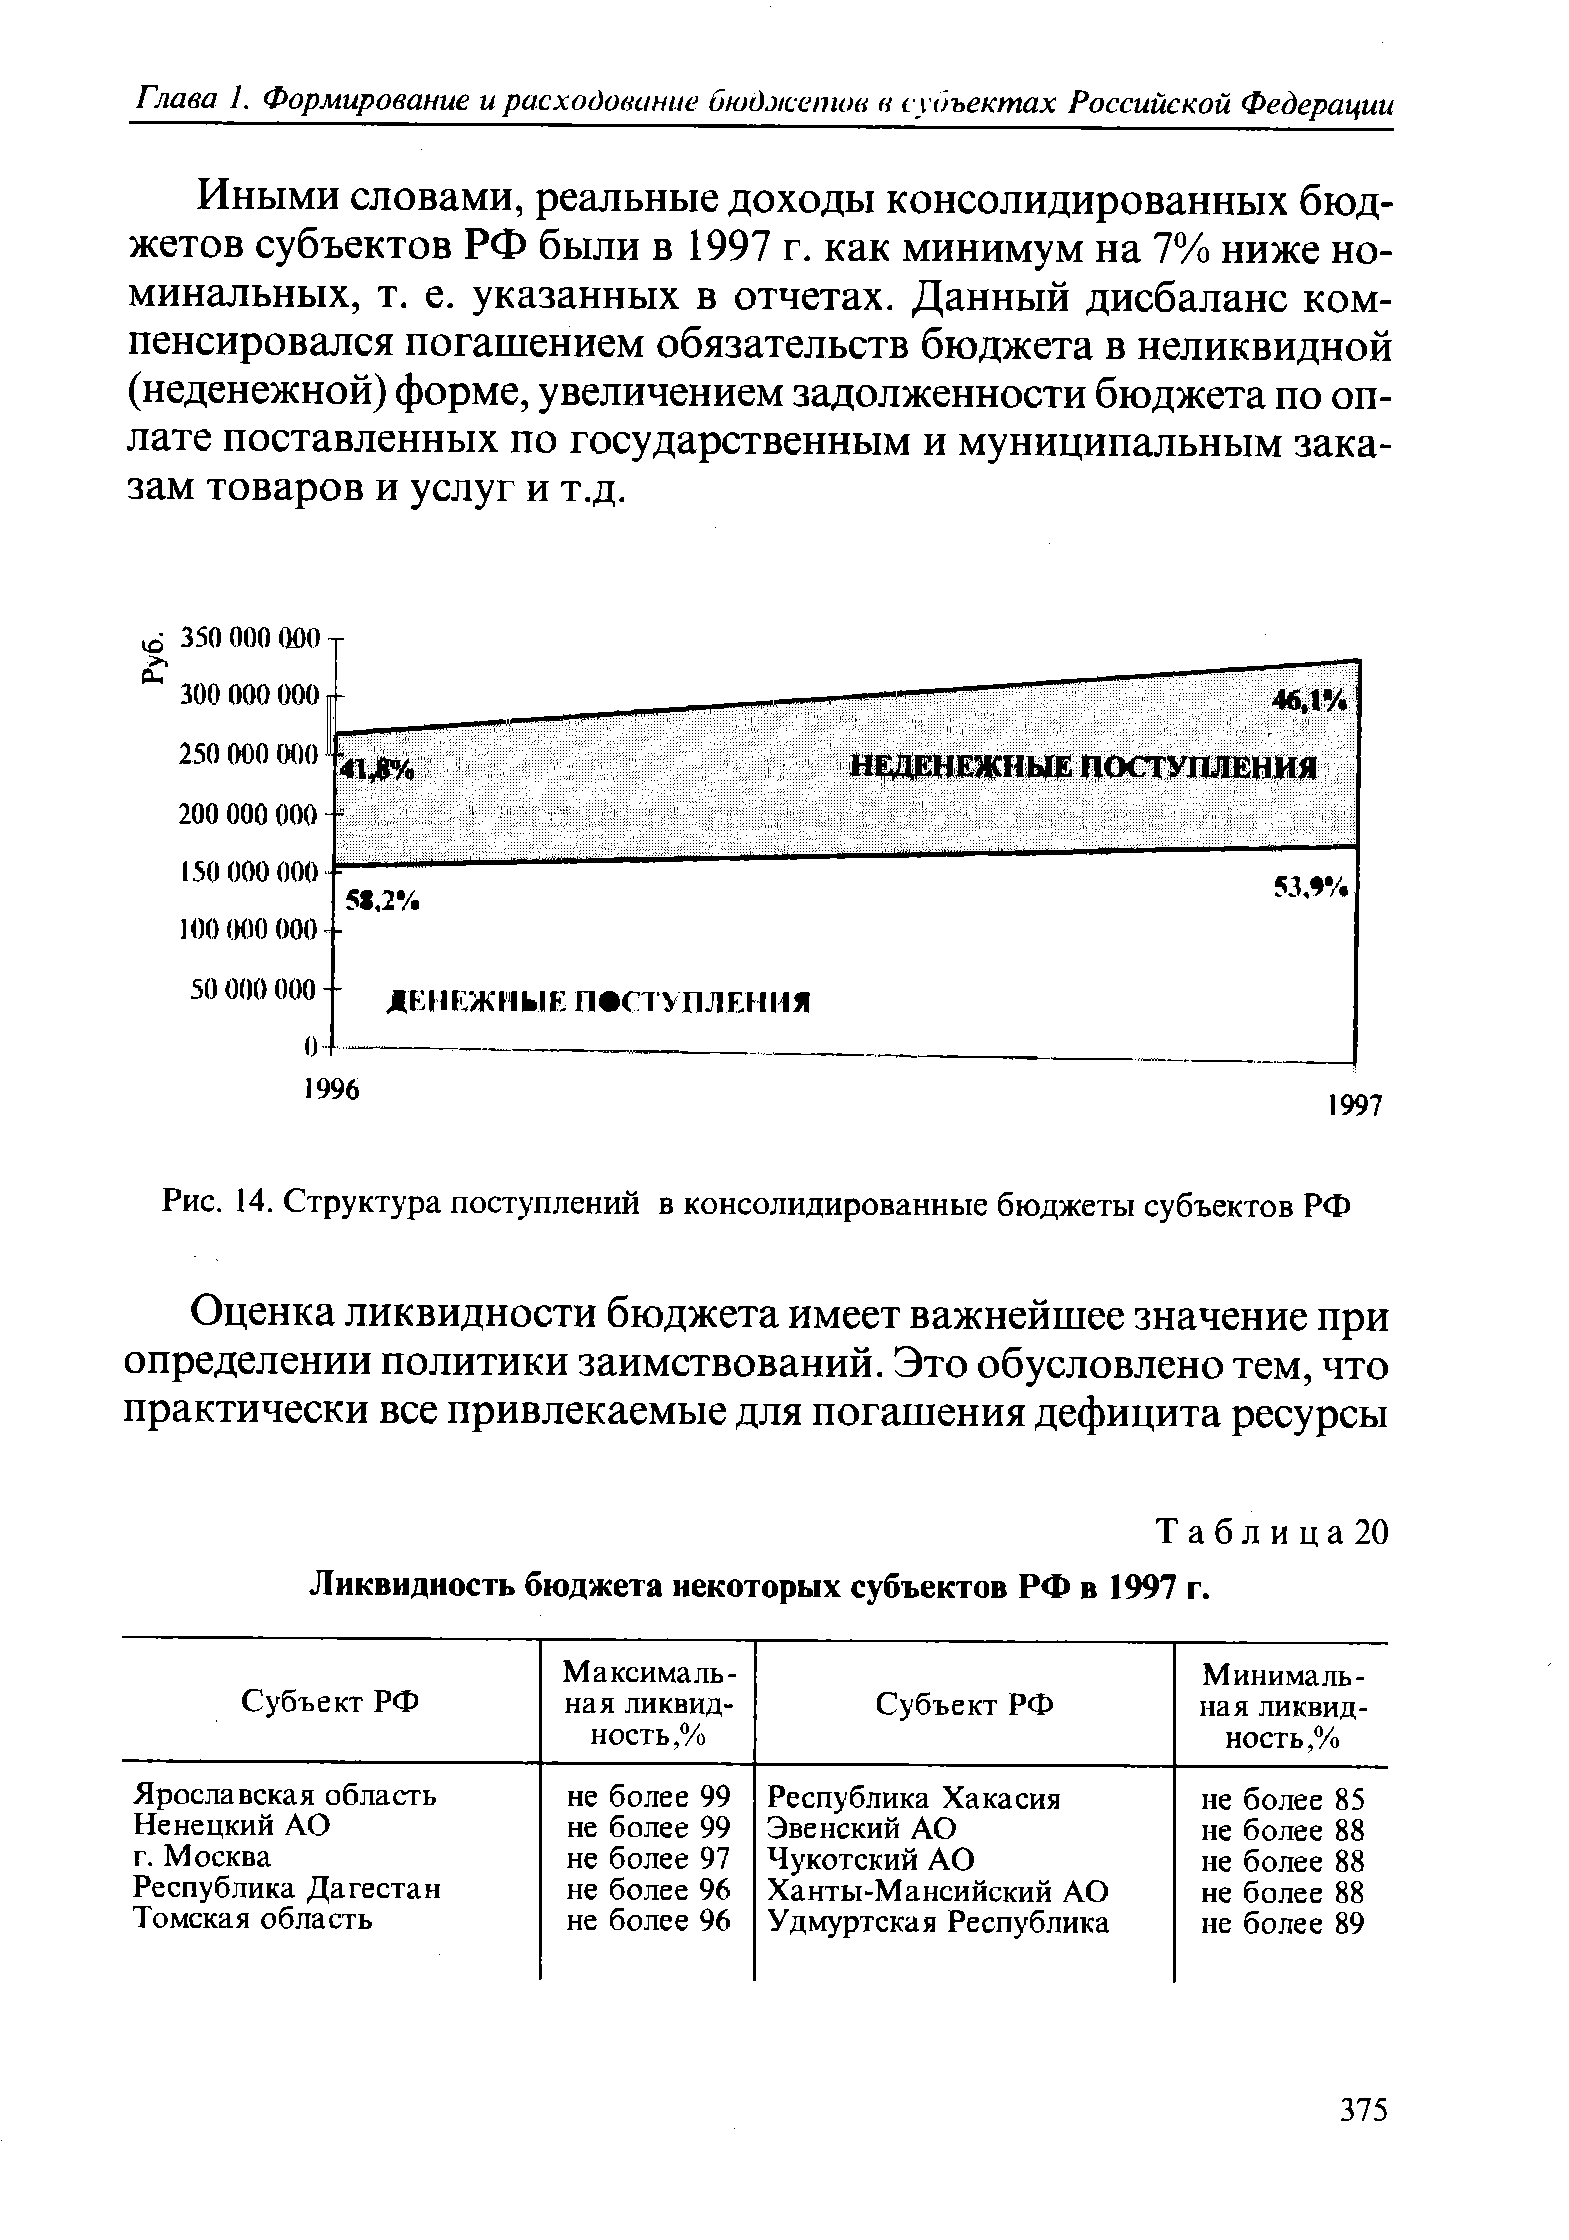 Таблица 20 Ликвидность бюджета некоторых субъектов РФ в 1997 г.
